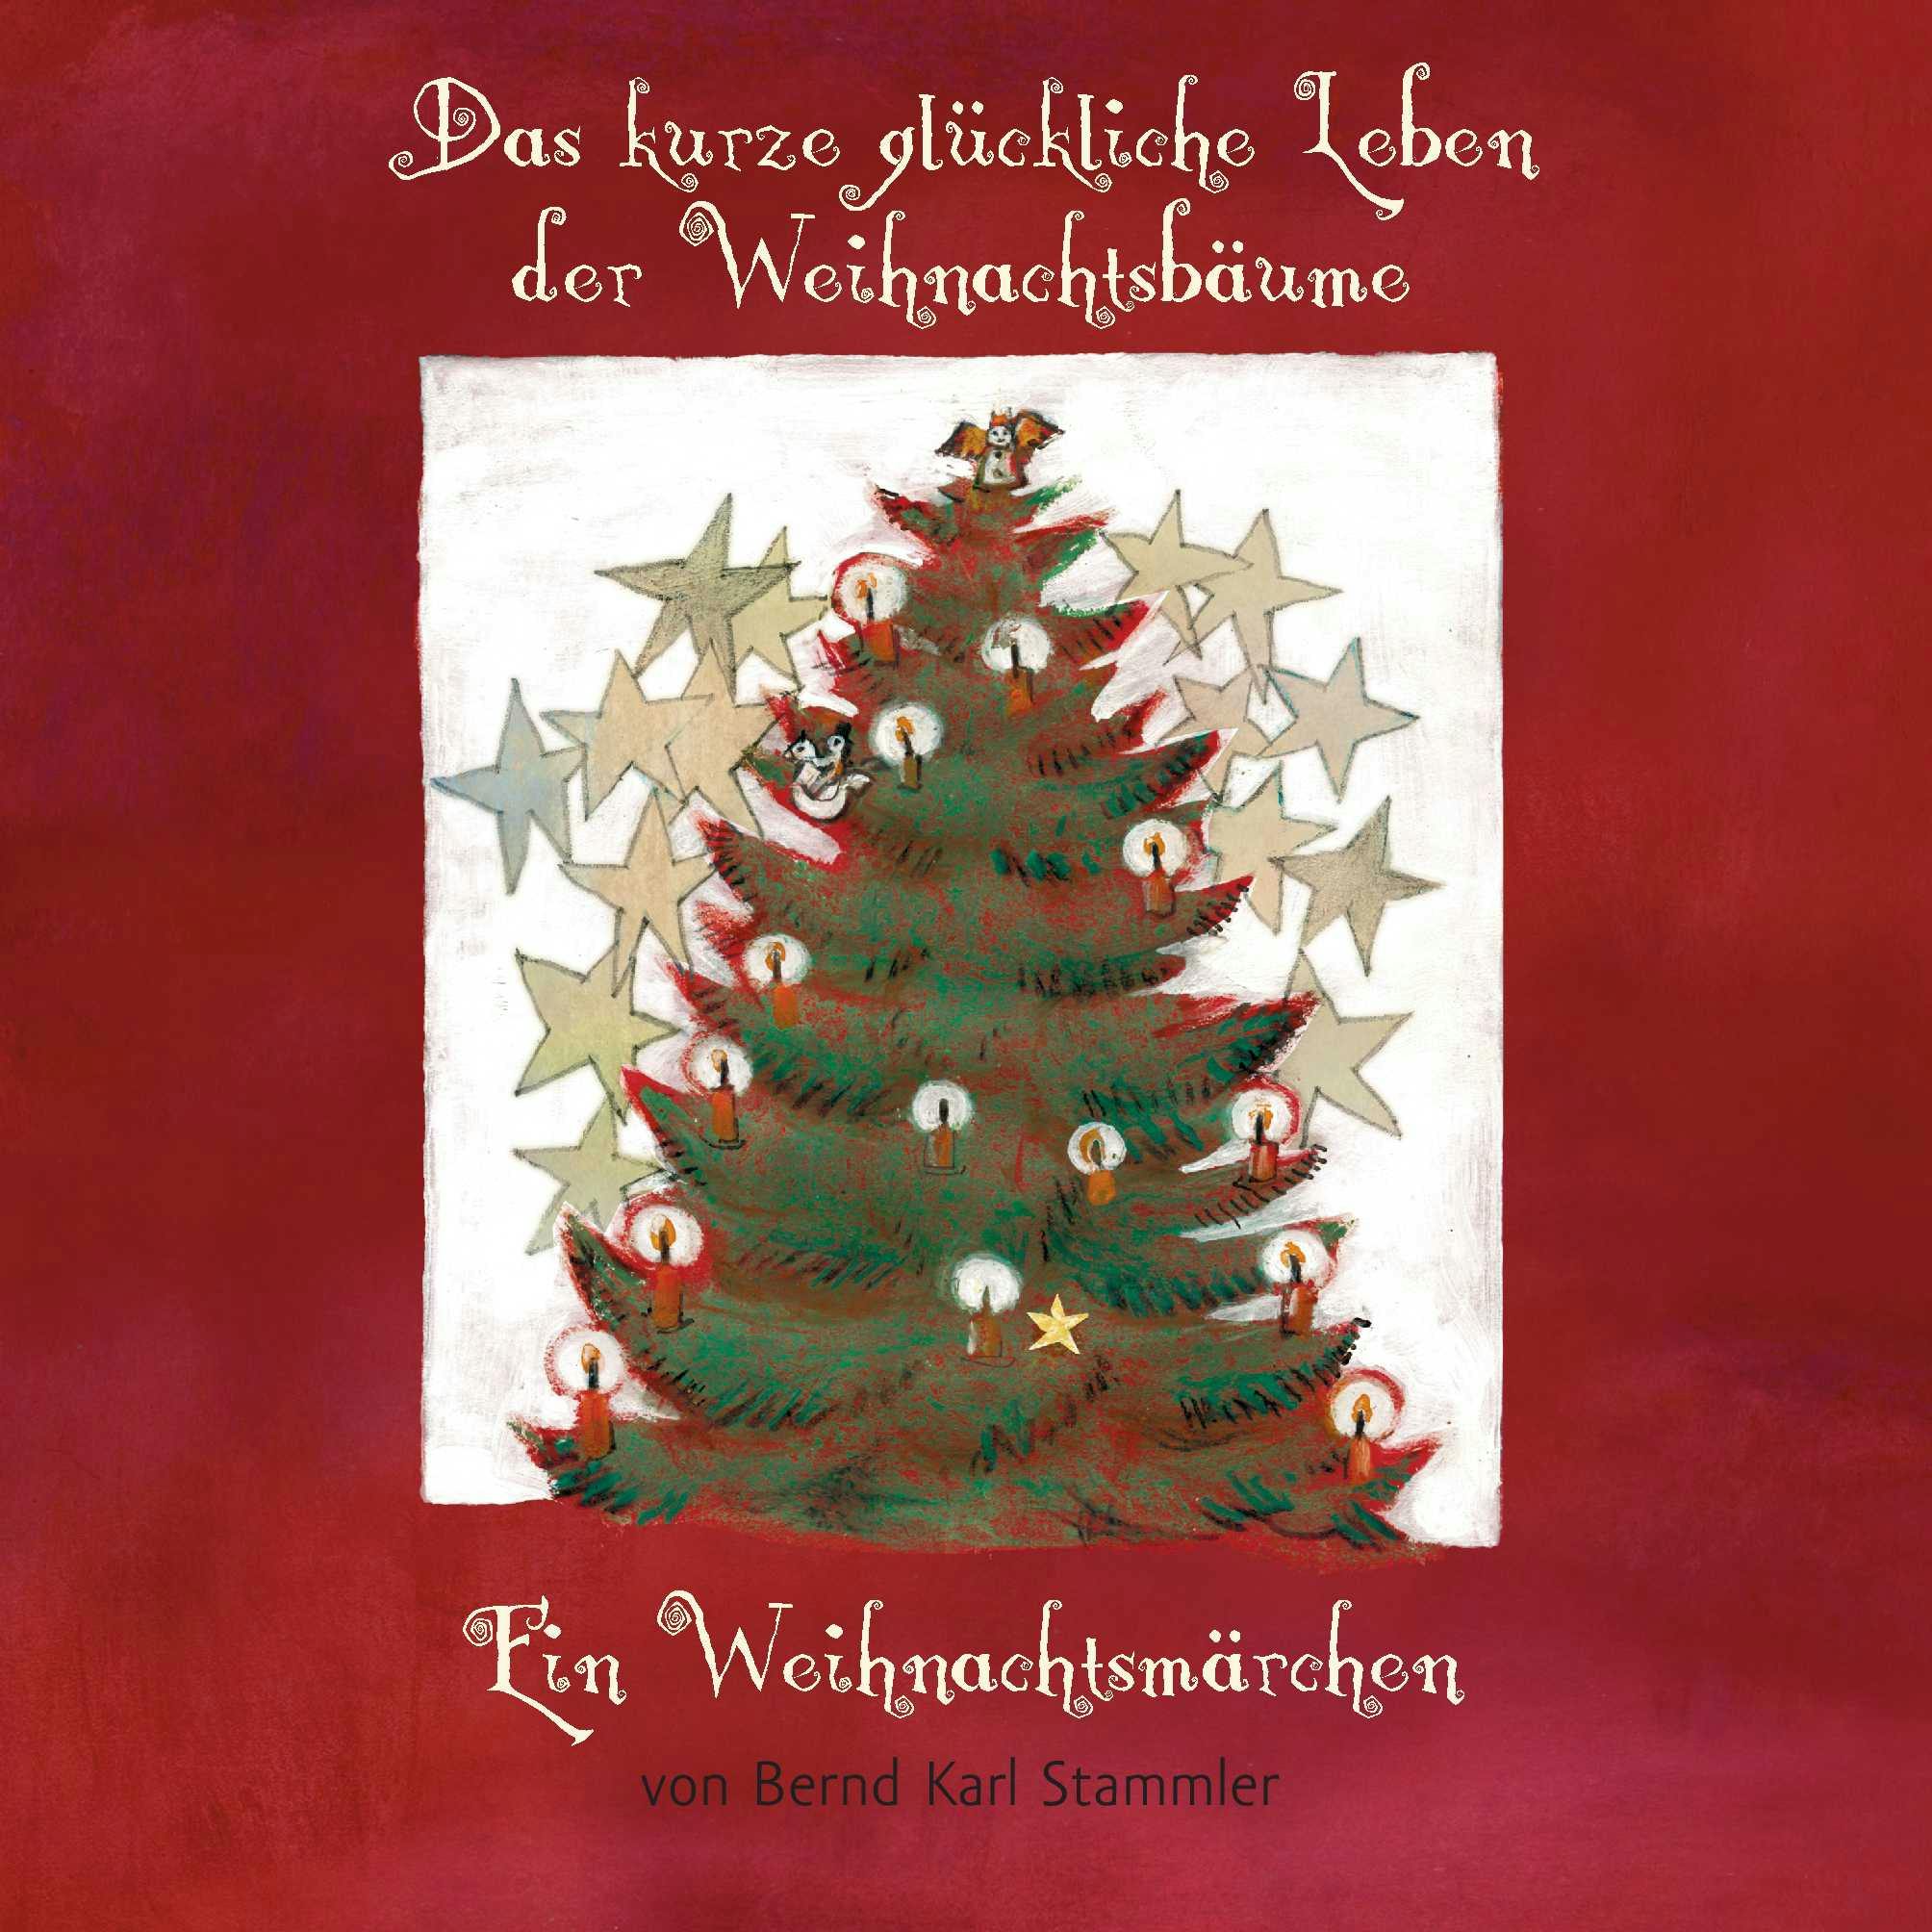 Das kurze glückliche Leben der Weihnachtsbäume - Bernd Karl Stammler